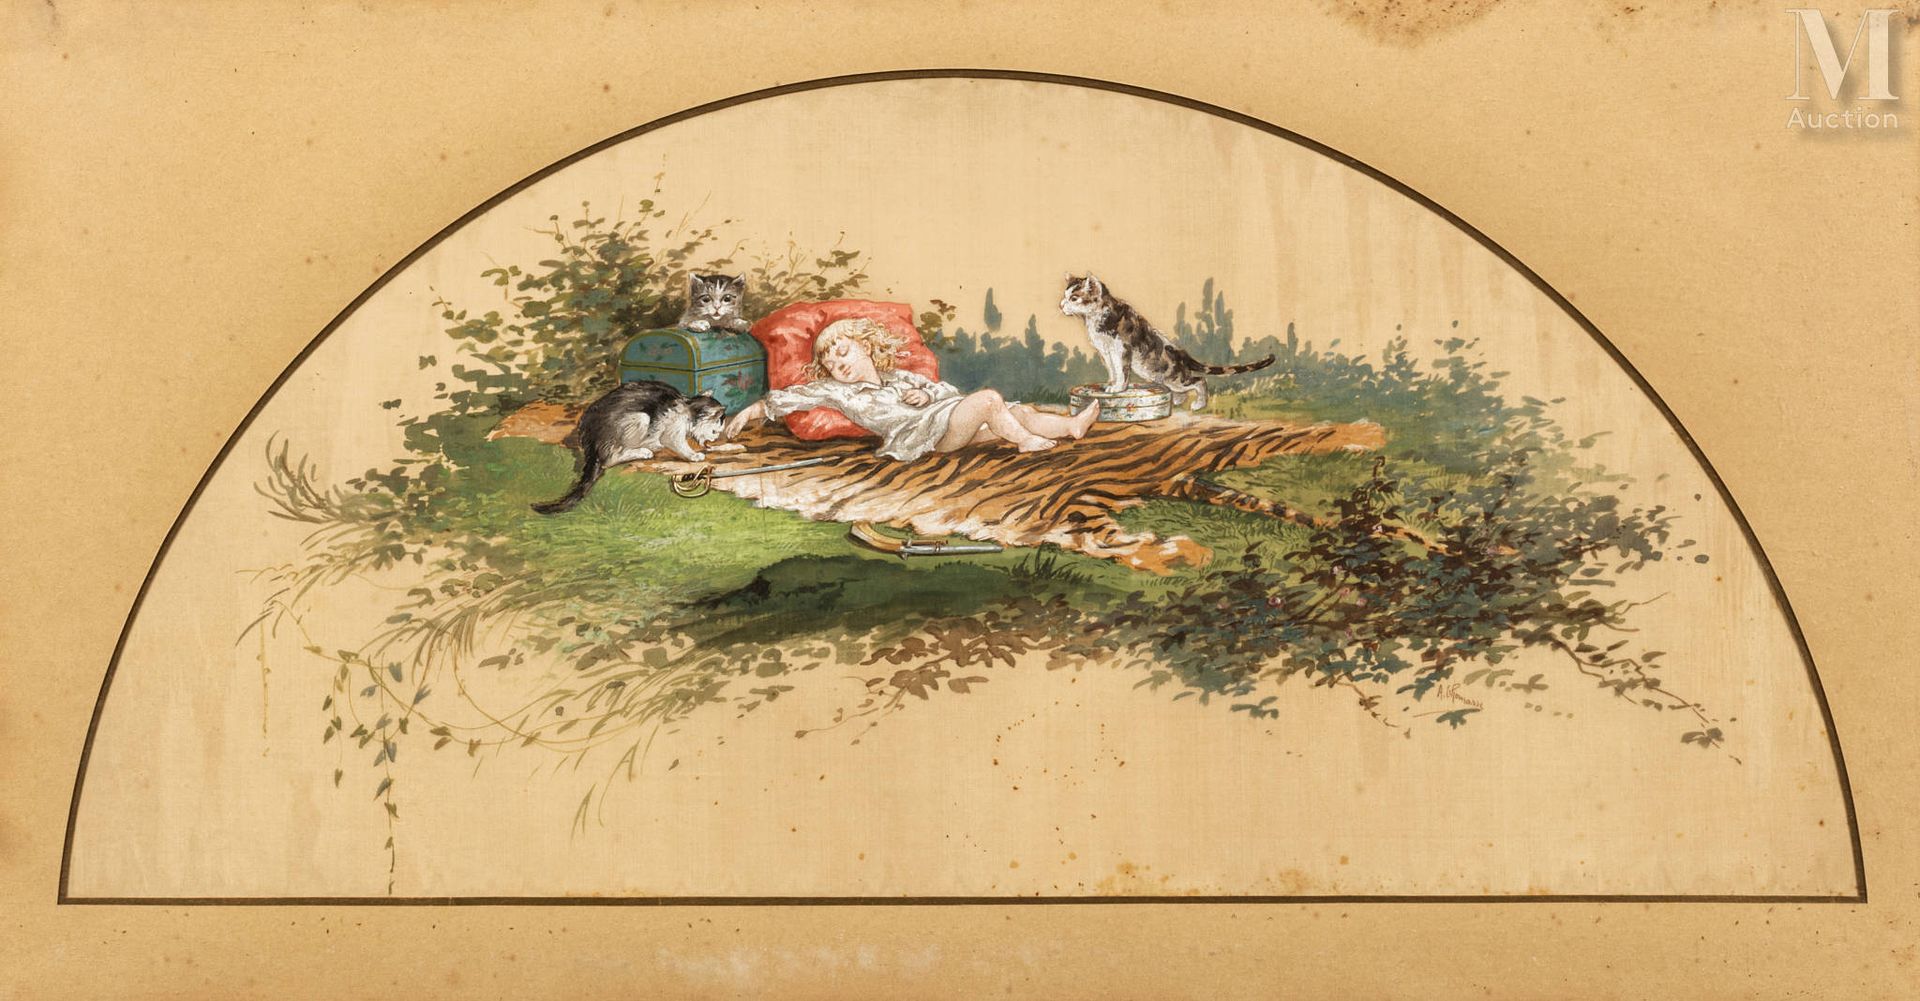 D'après Adolphe THOMASSE Jeune fille endormie au chat sur une peau de tigre.

Pr&hellip;